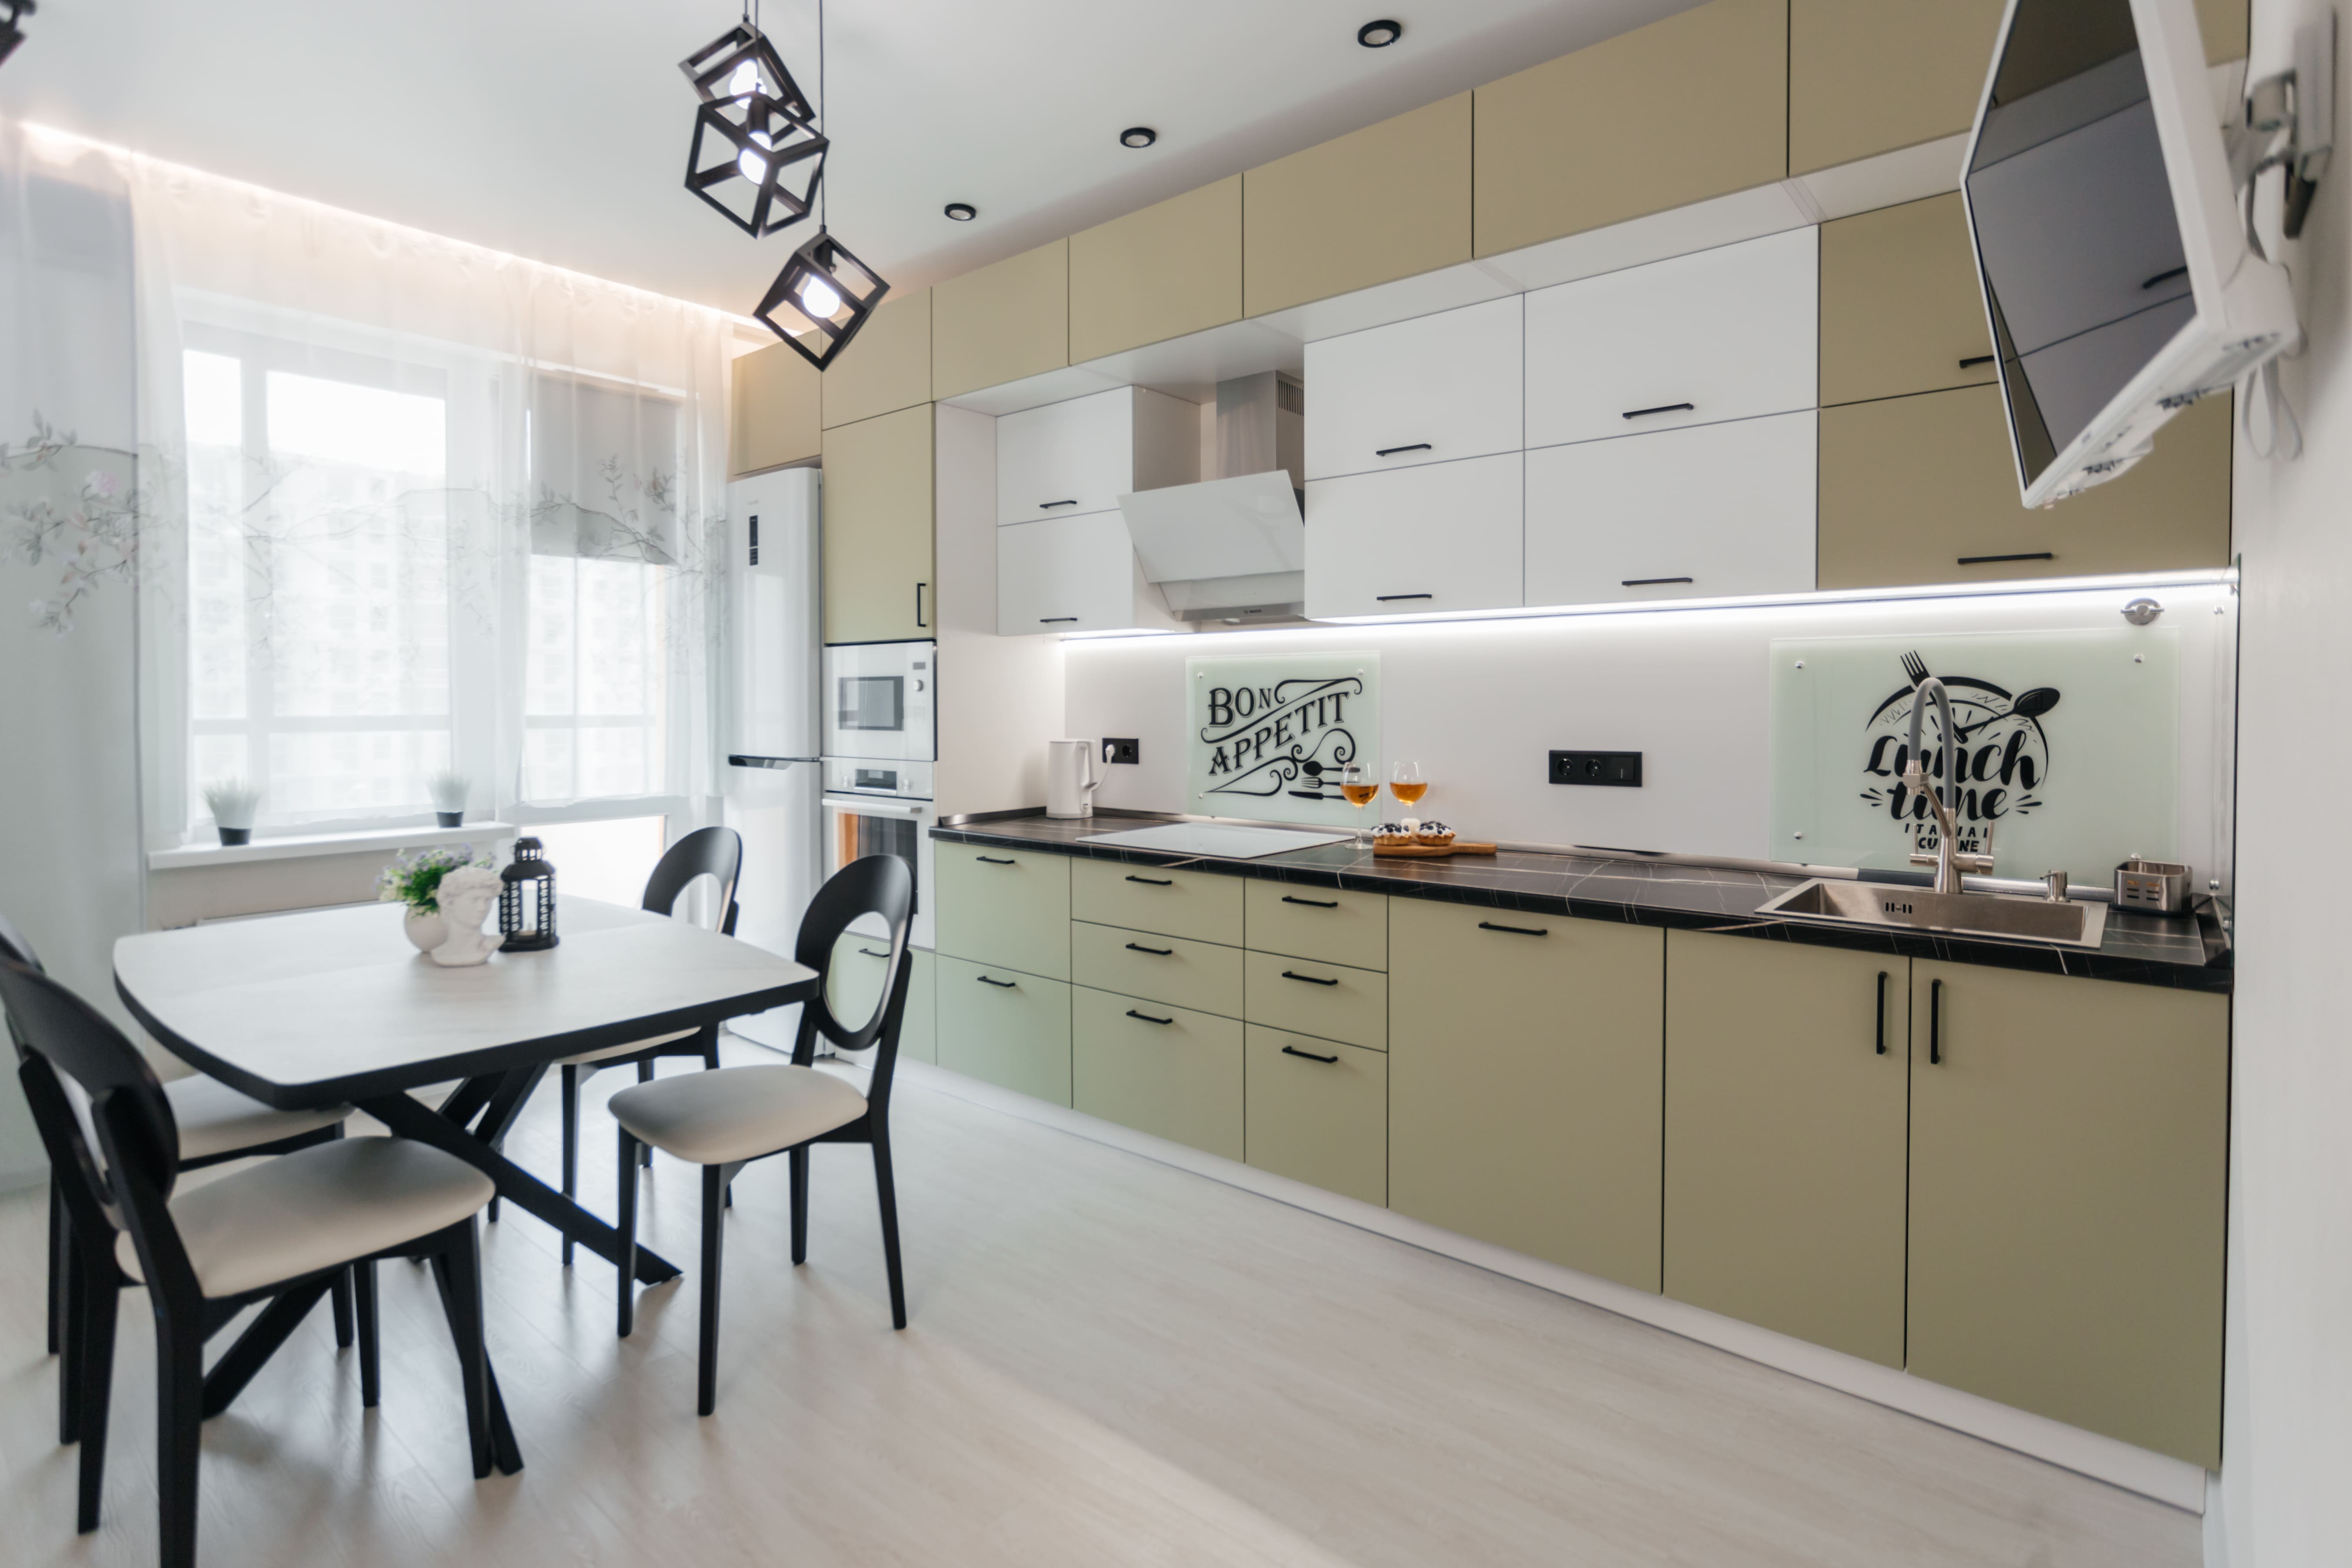 Прямая кухня с высокими потолками: как использовать вертикальное пространство для создания интересного дизайна